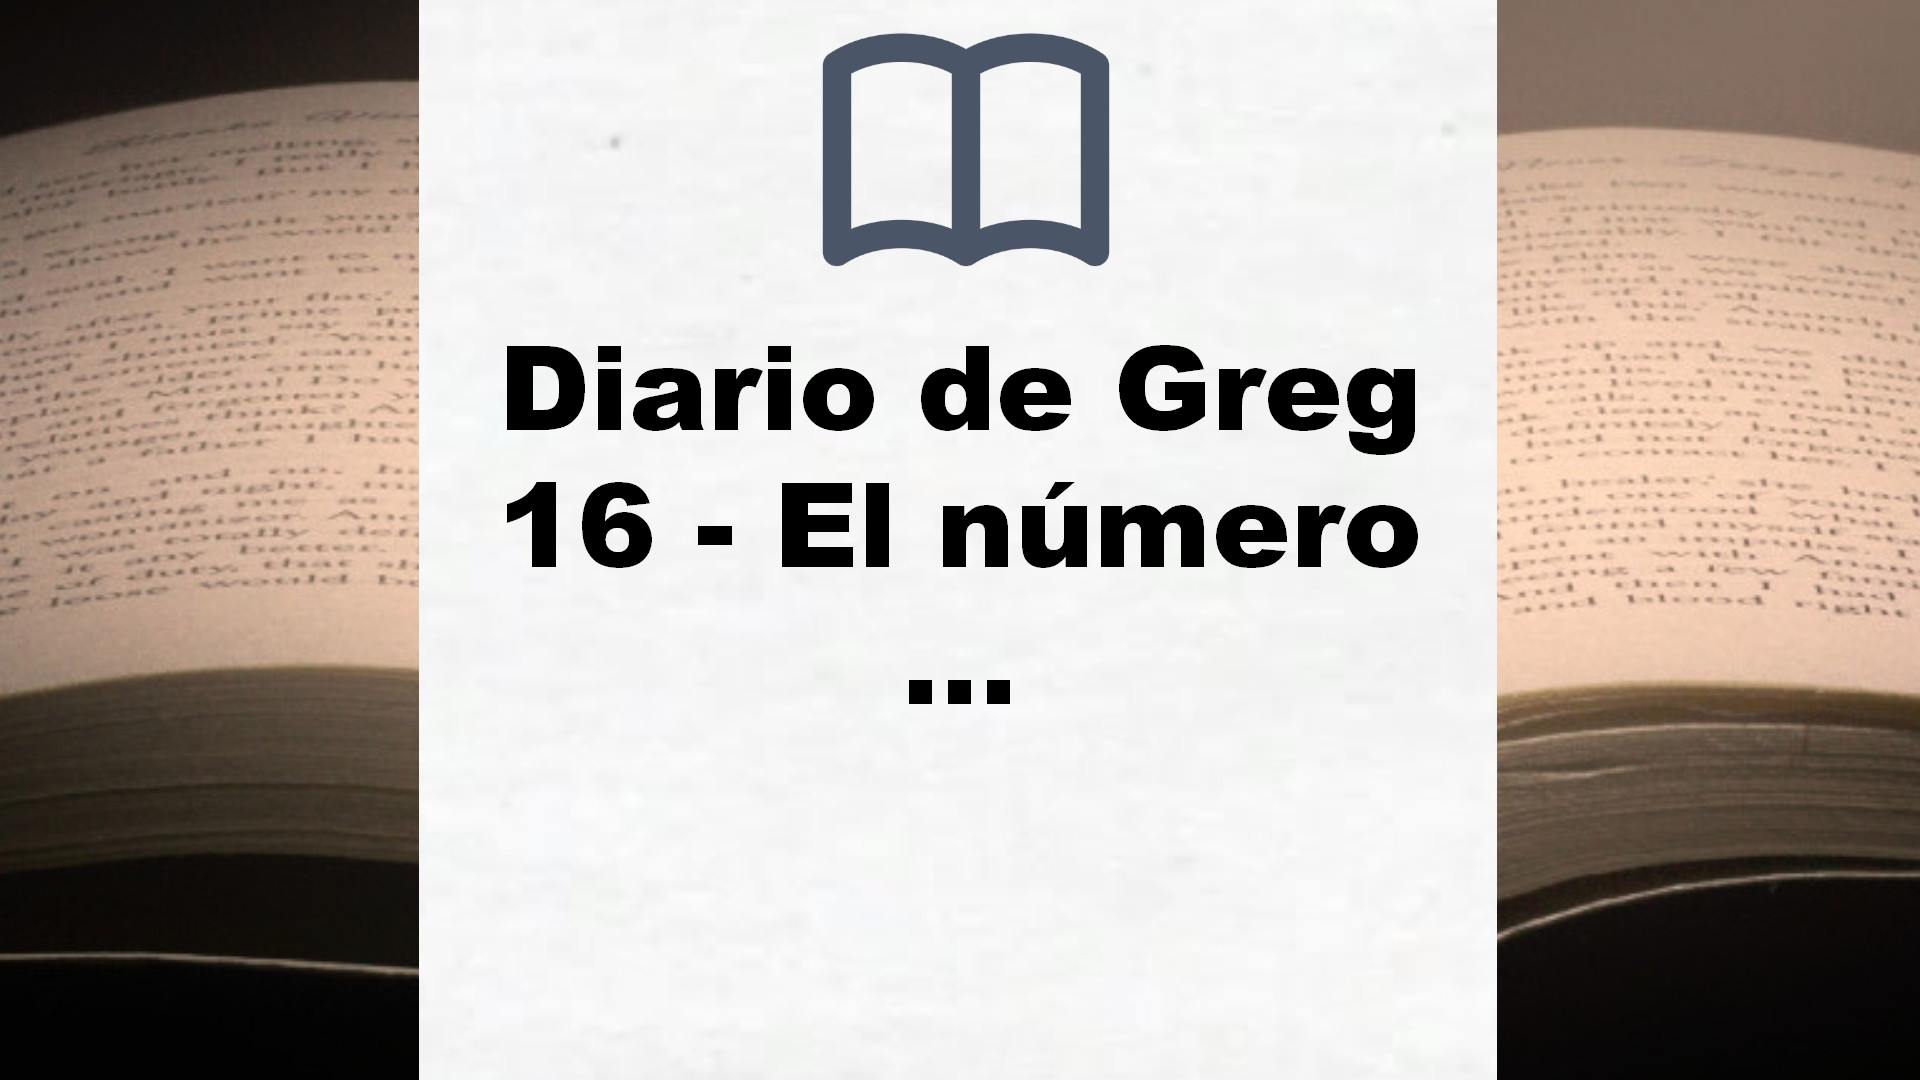 Diario de Greg 16 – El número 1 – Reseña del libro